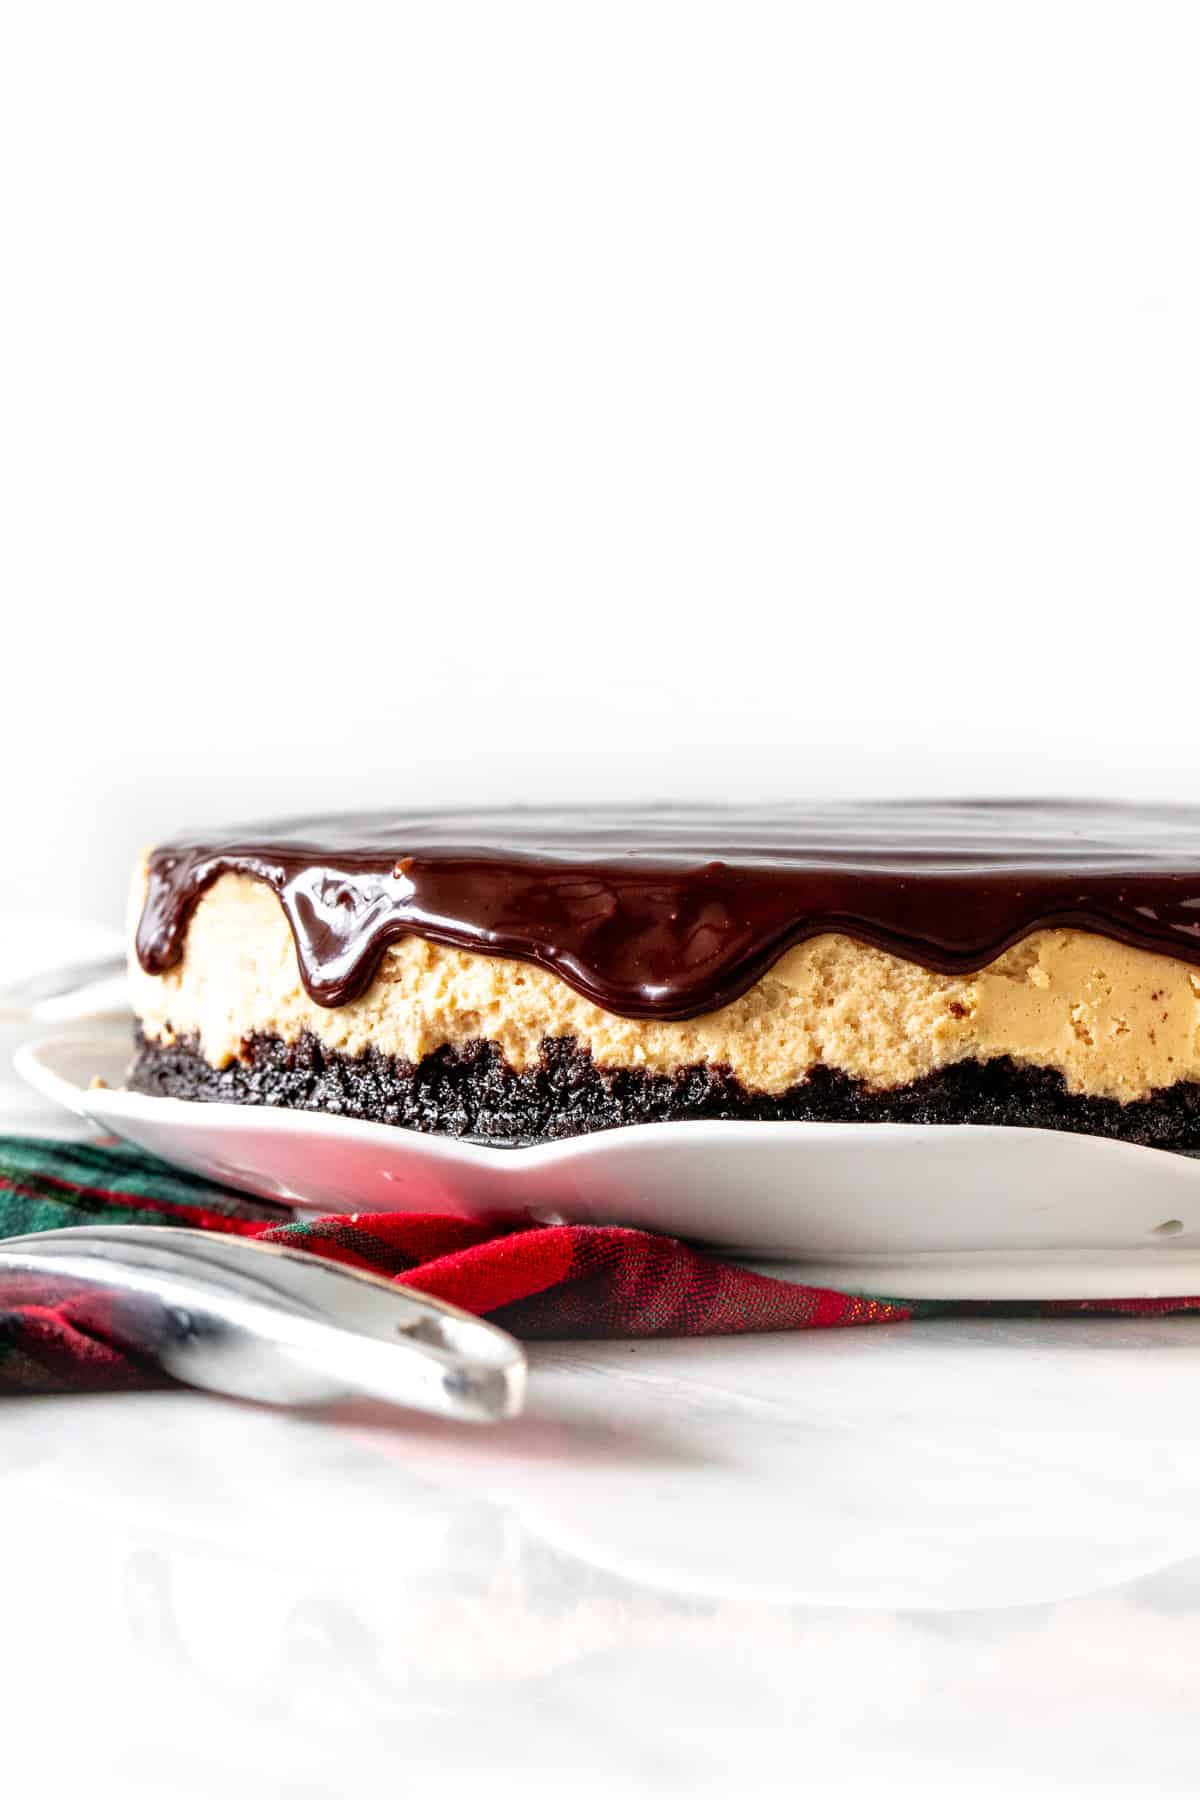 9-inch round Irish cream cheesecake with chocolate on top